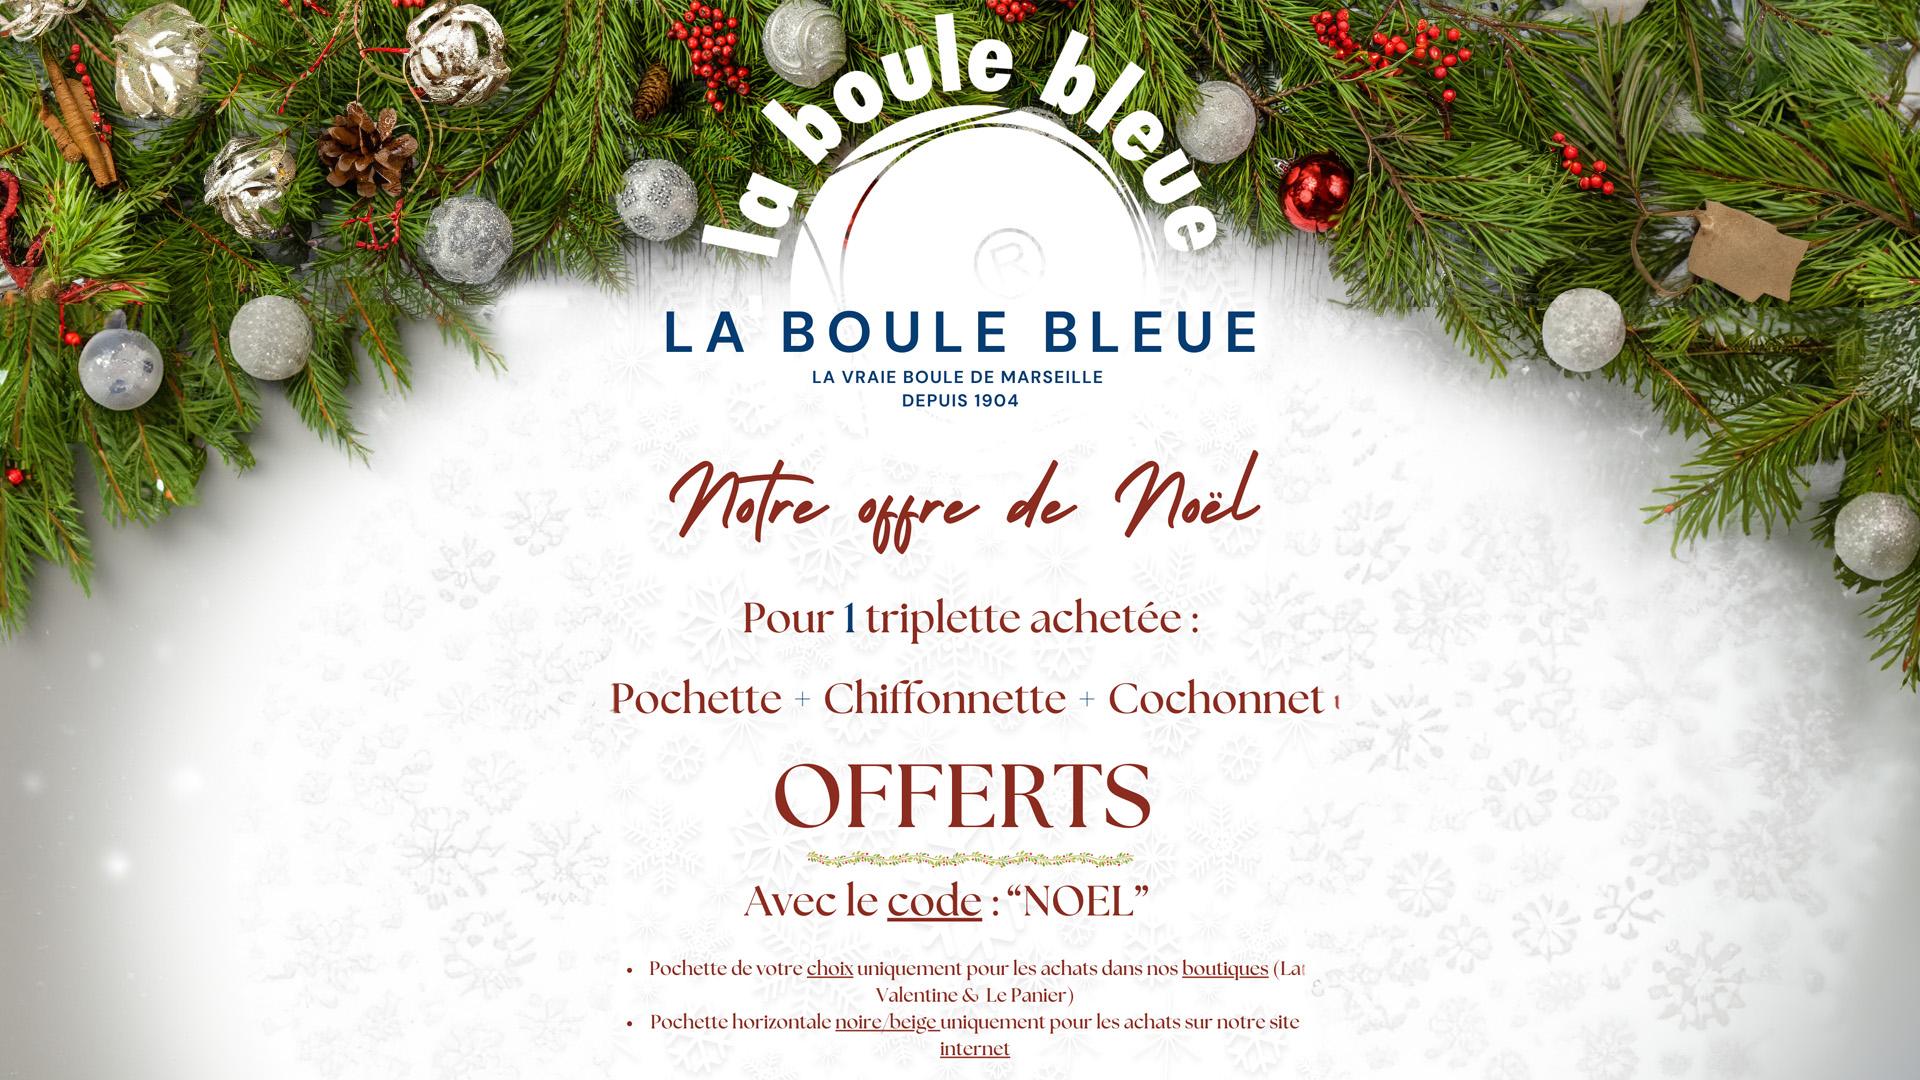 https://www.boulistenaute.com/les-actualites-de-la-petanque-et-du-monde-bouliste/i/77099554/la-boule-bleue-sous-le-sapin-triplette-cadeaux-offerts